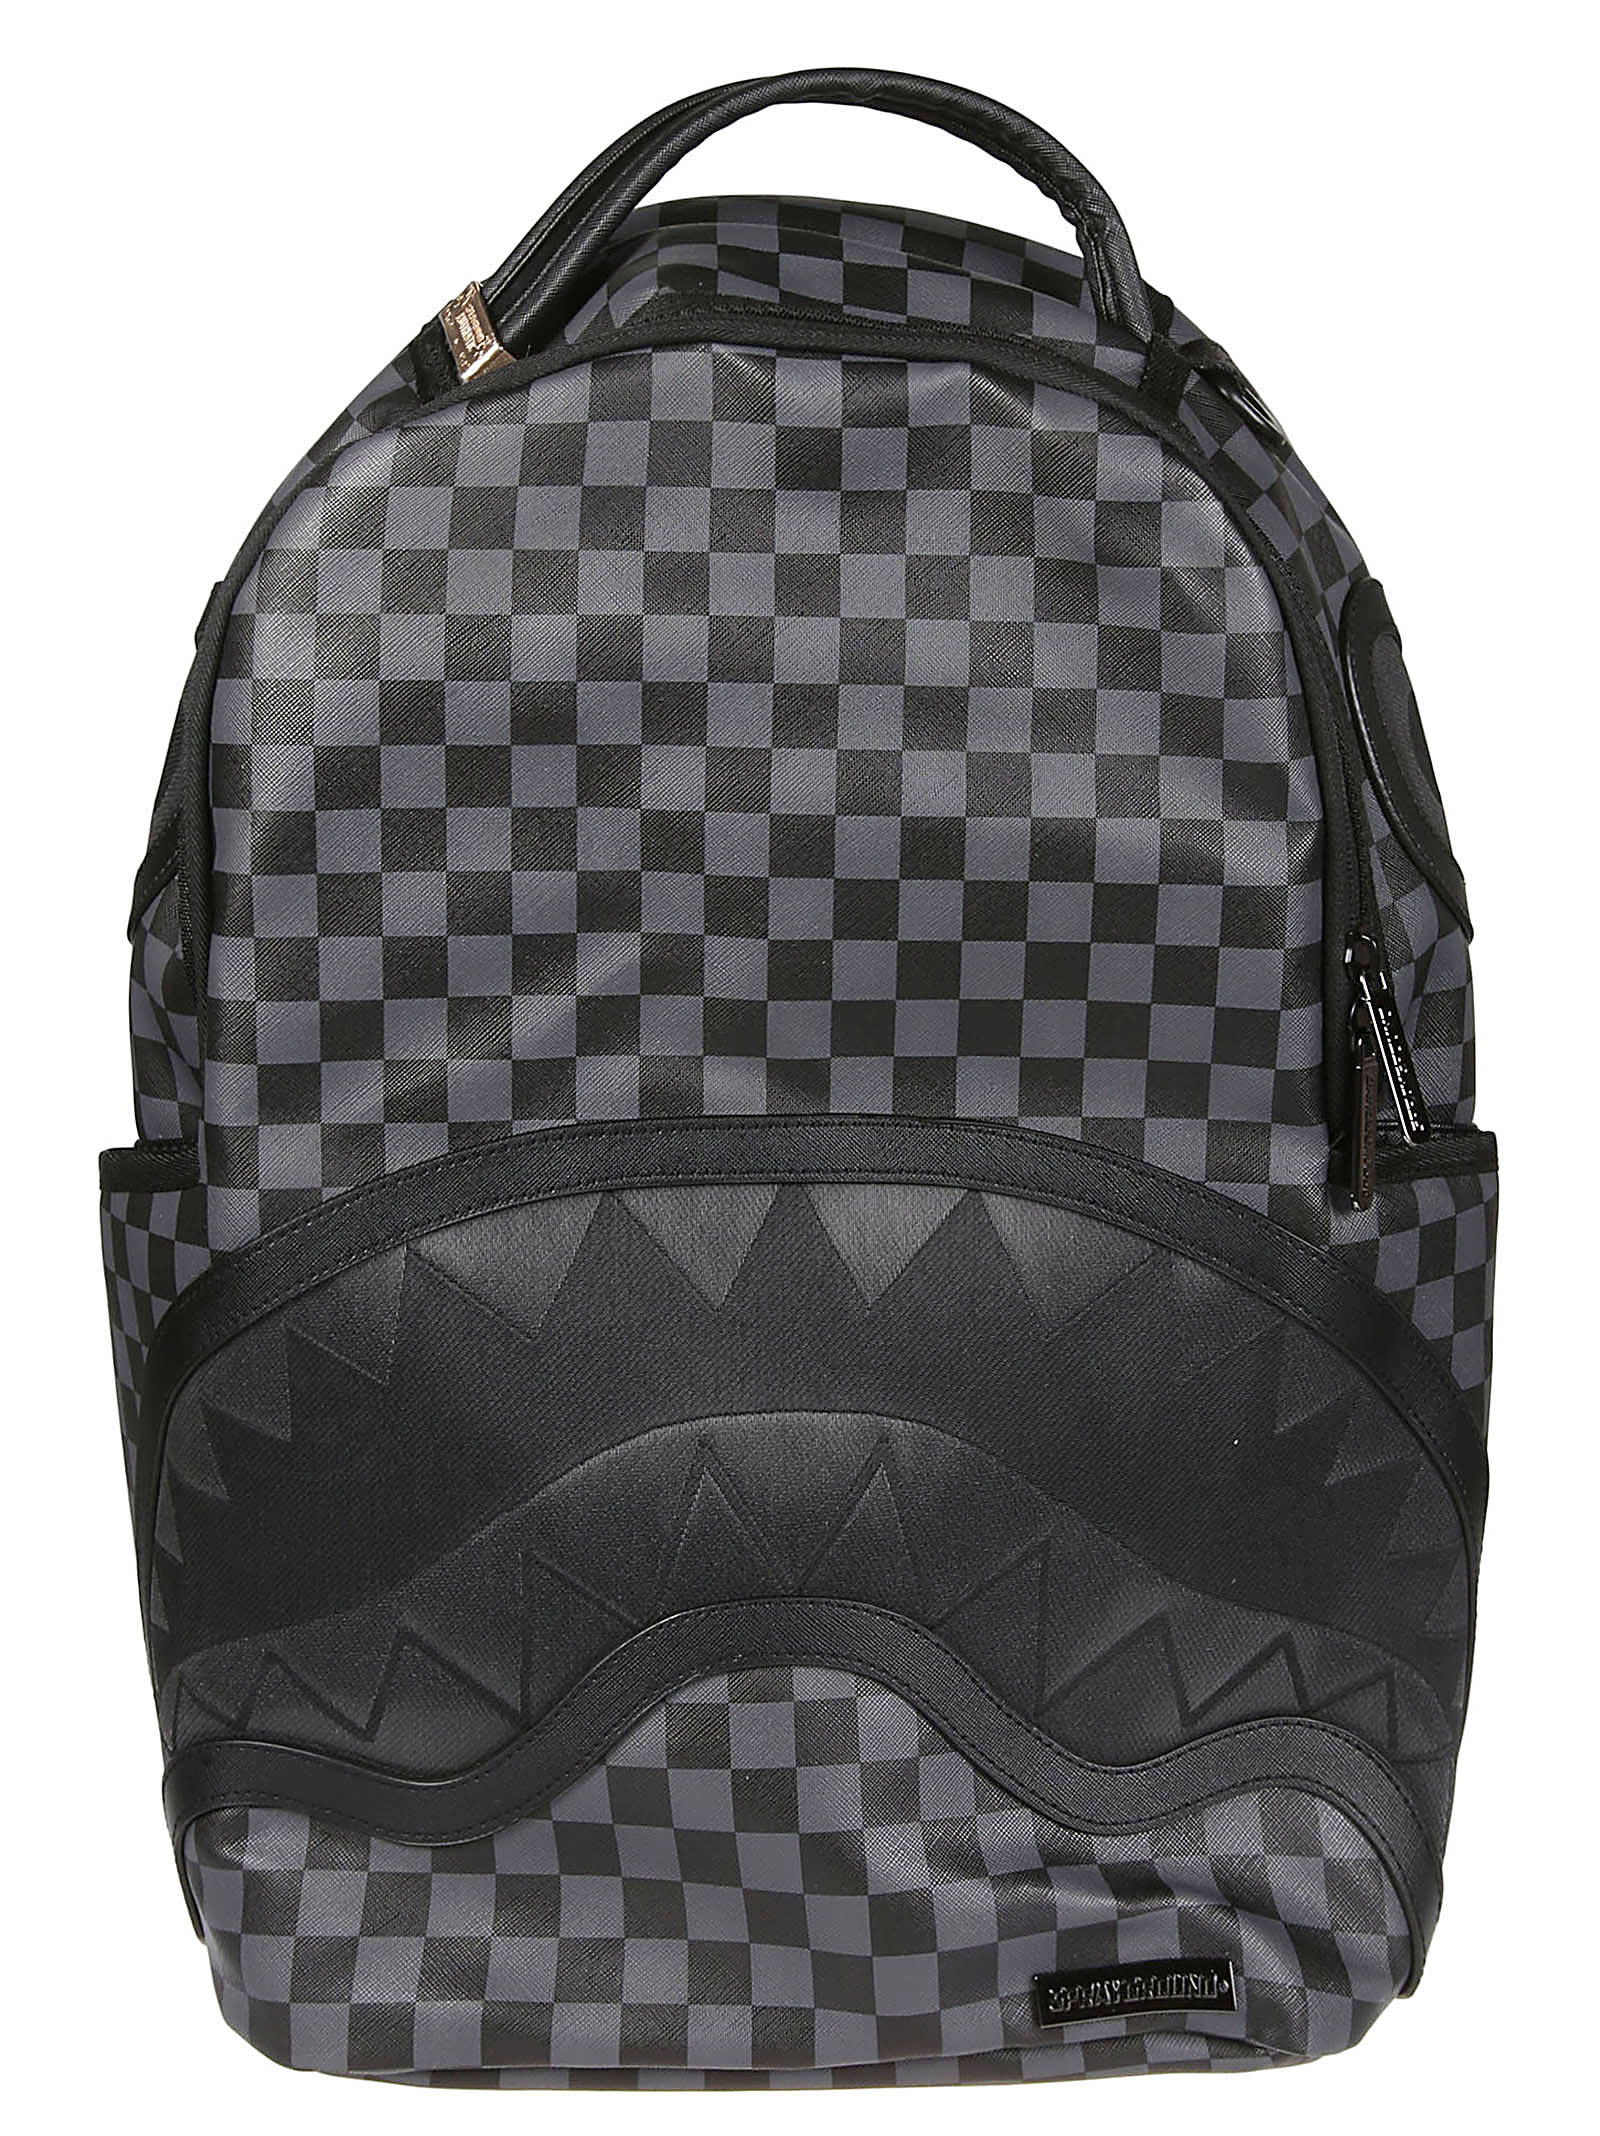 Checkered Fiber Optic Shark Backpack